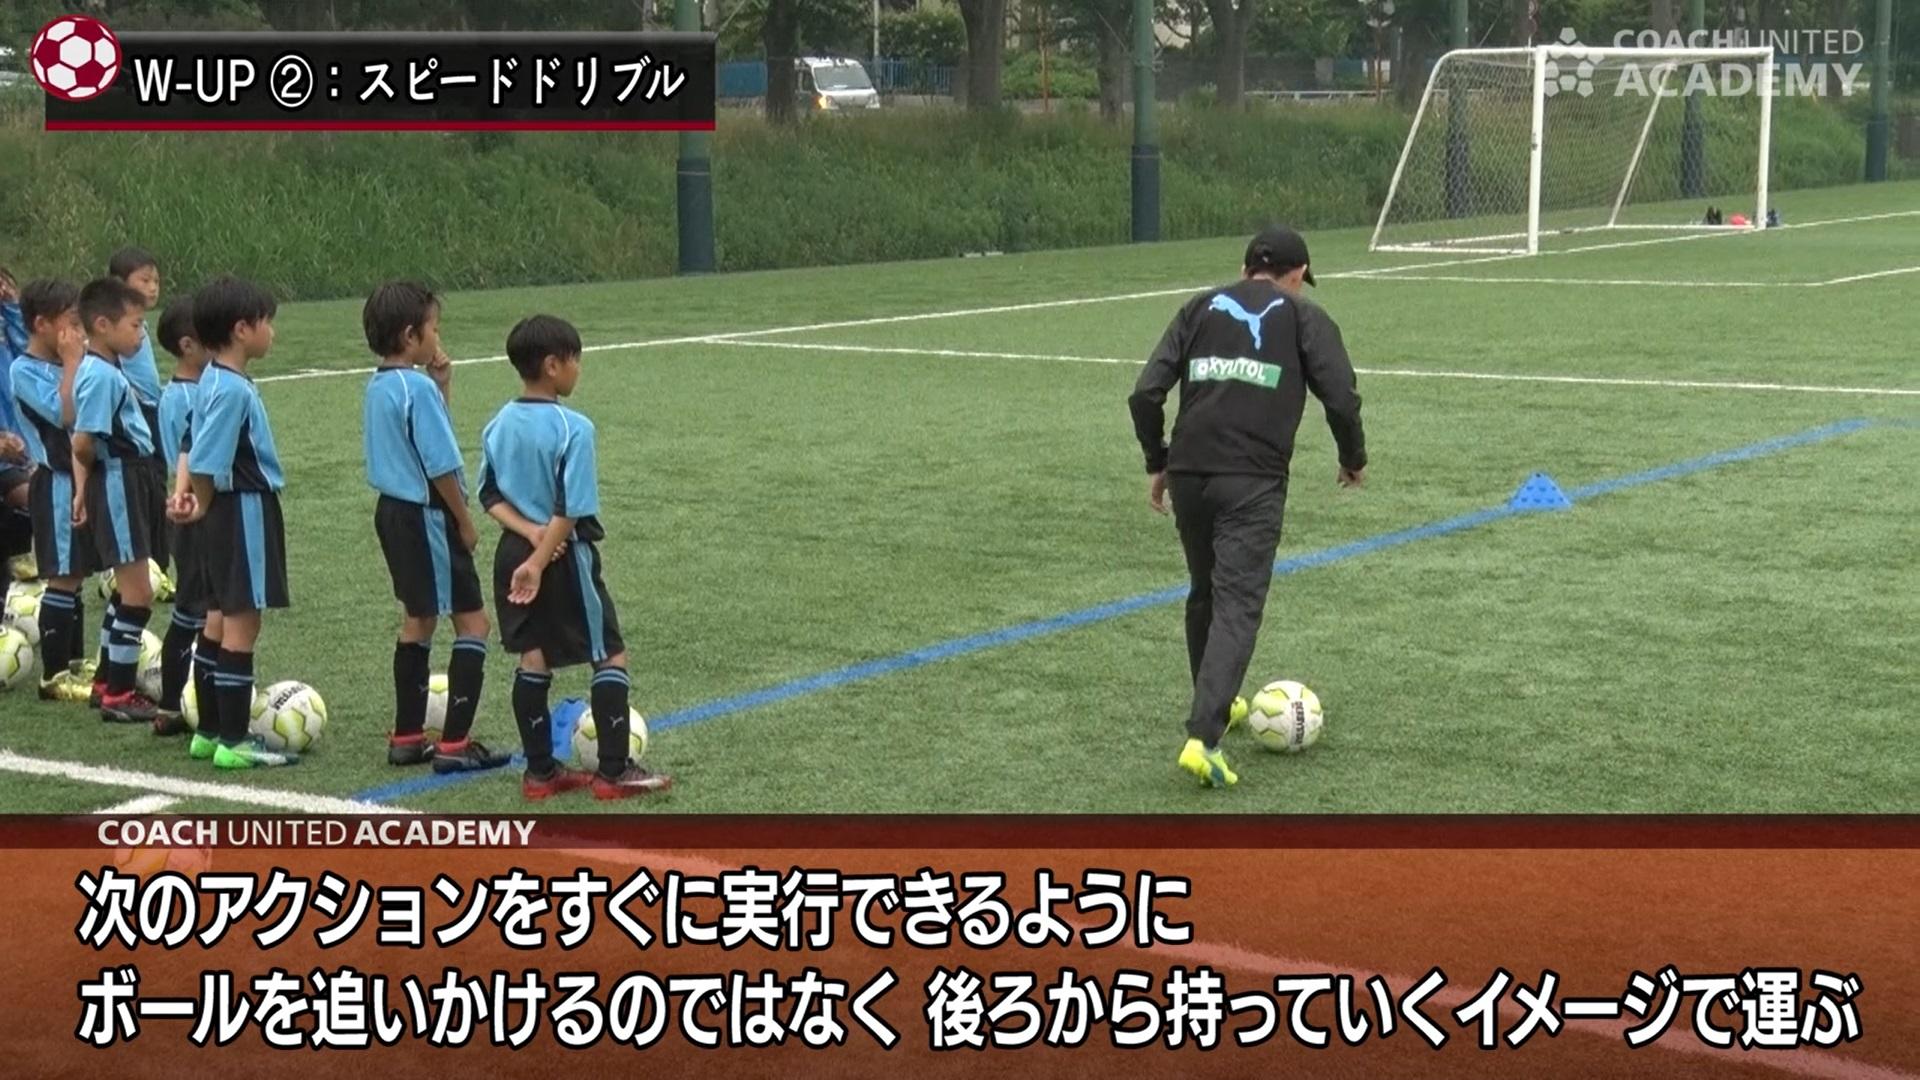 運ぶドリブル は体の前ではなく後ろでボールを触る 川崎フロンターレu 10が実践するドリブルトレーニング Coach United コーチ ユナイテッド